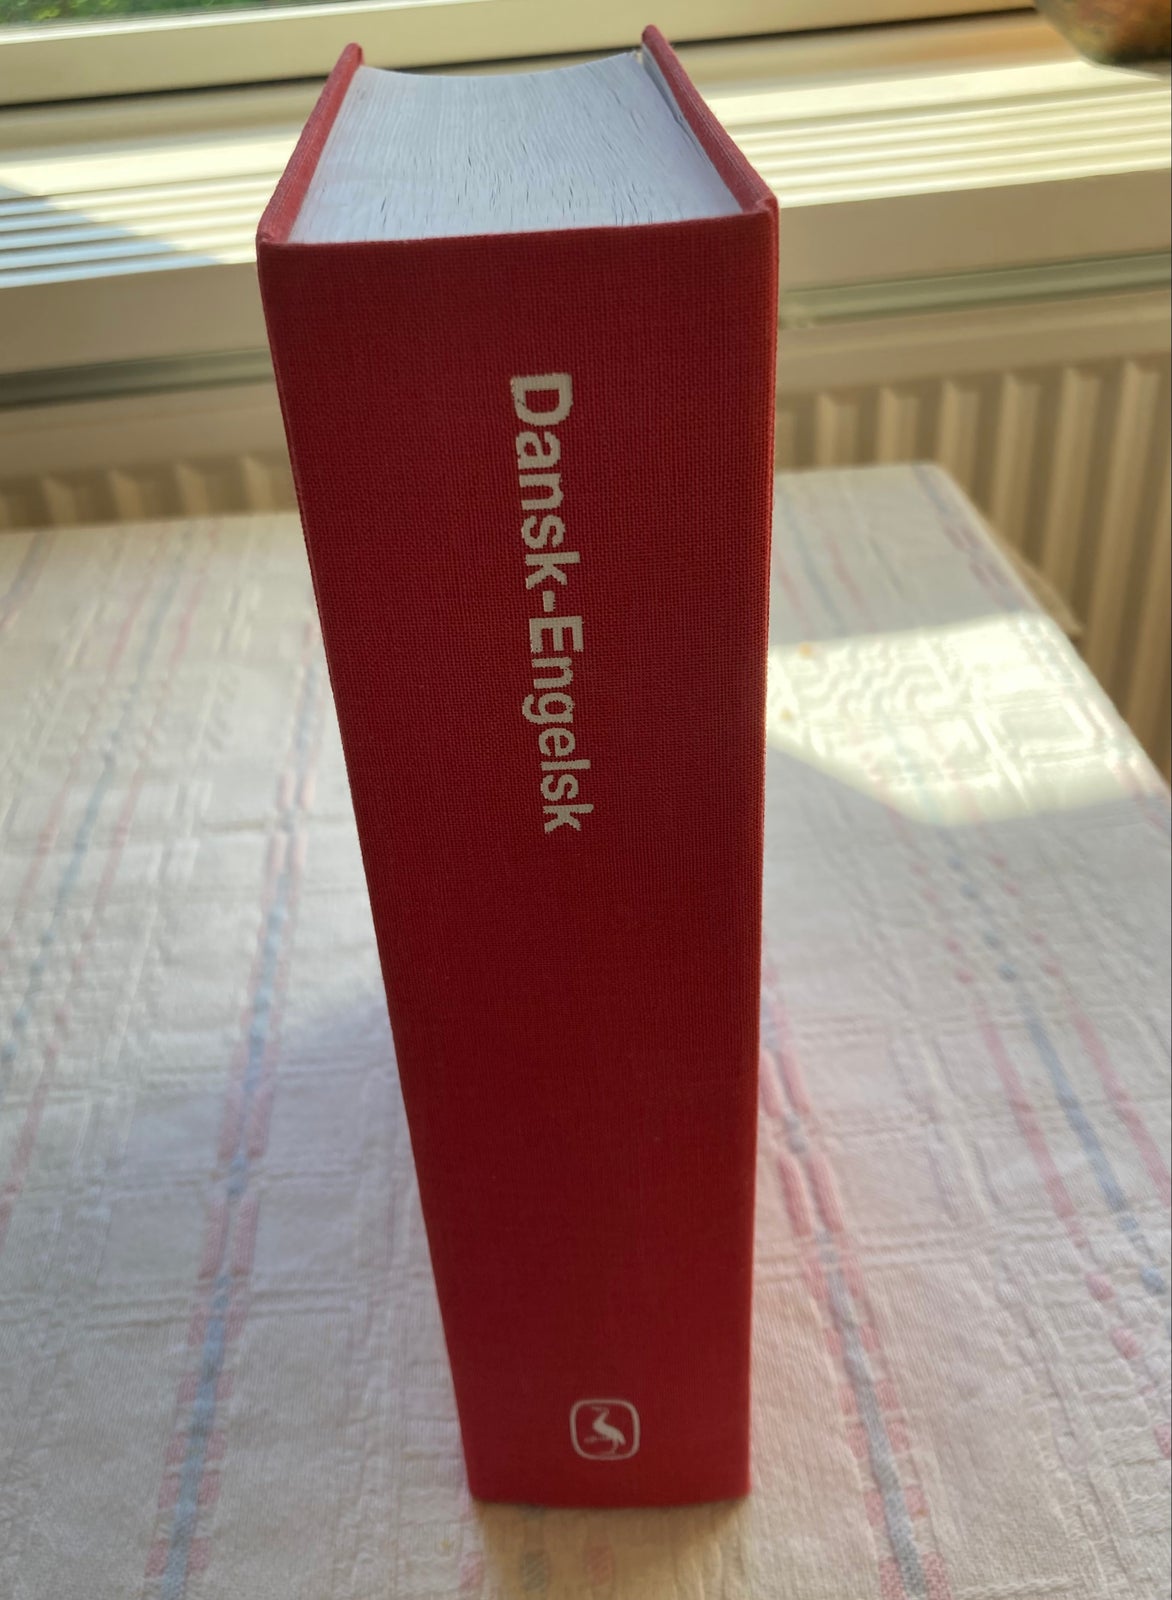 Dansk-Engelsk ordbog fra Gyldendals Røde Ordbøger, Jens